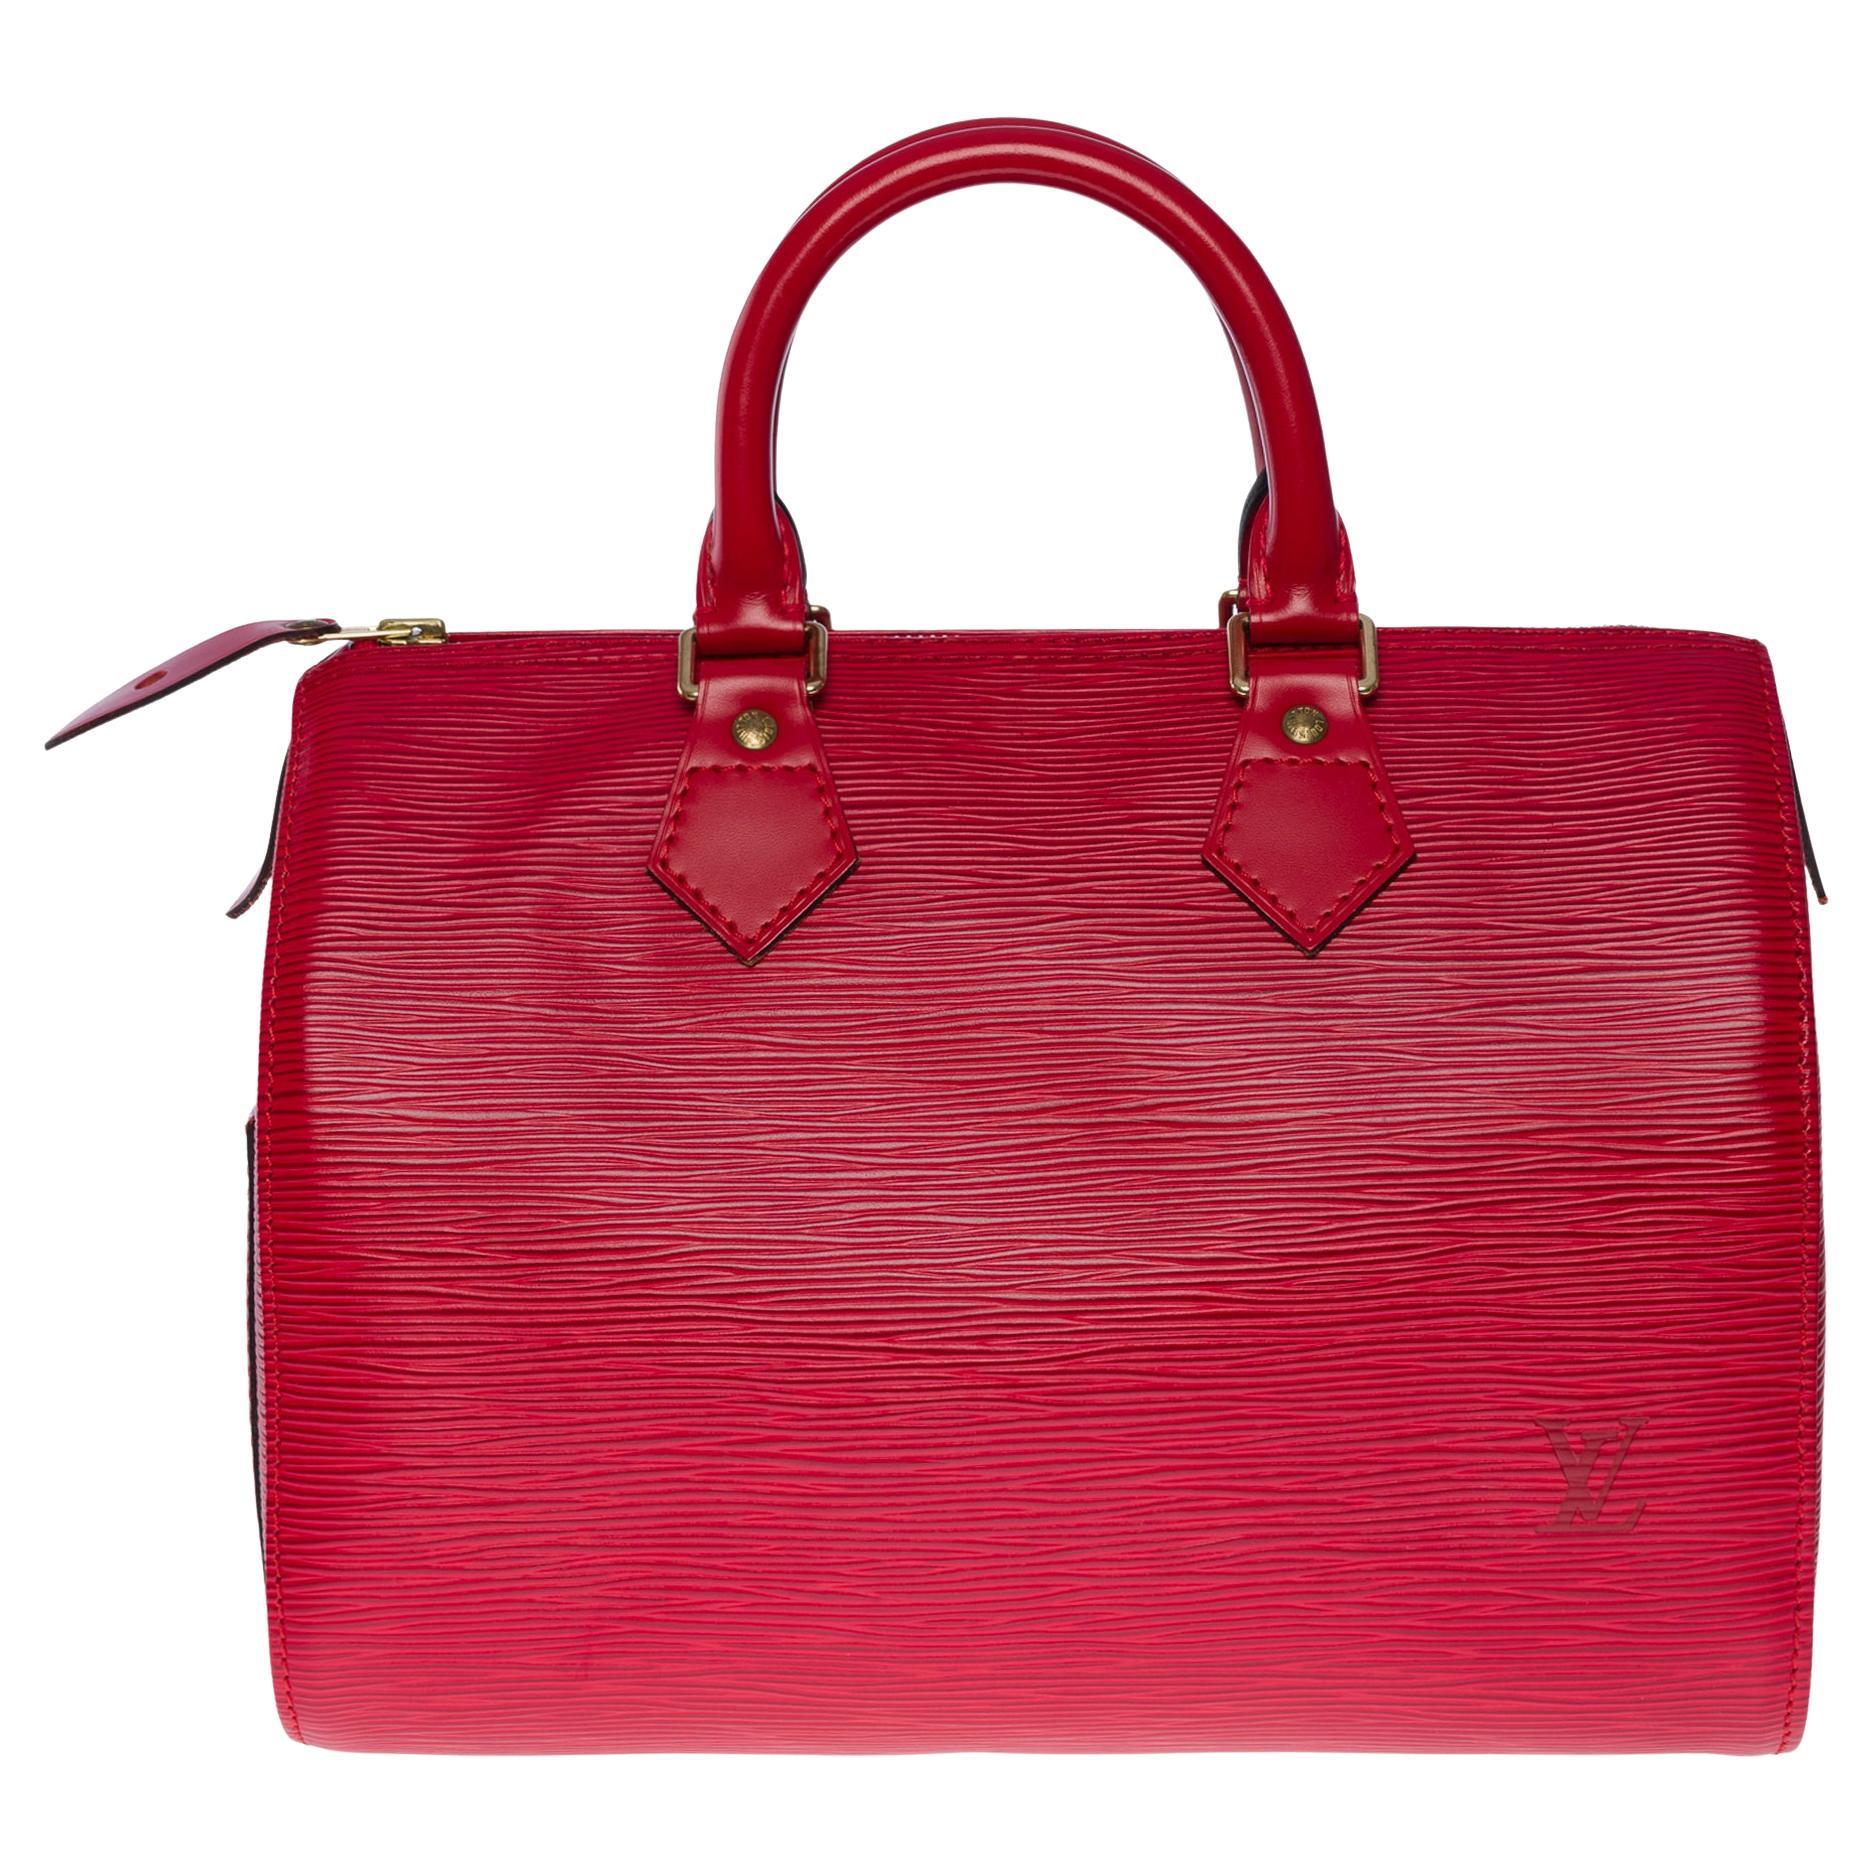 Magnifique sac à main Louis Vuitton Speedy 25 en cuir épi rouge et métal doré